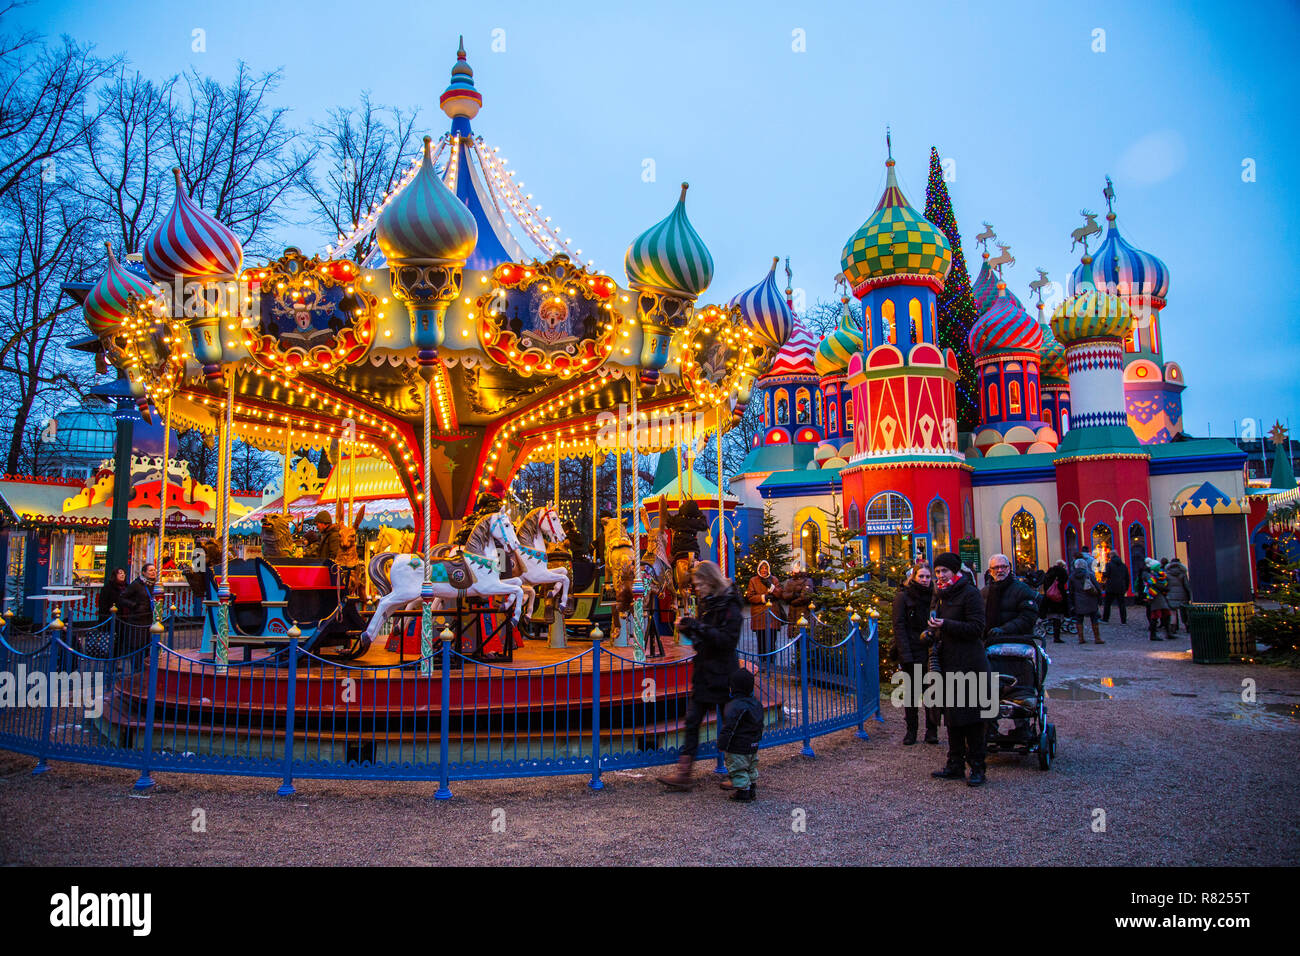 Carousel, marché de Noël dans le parc d'attractions des Jardins de Tivoli, centre-ville, Kopenhagenop, Danemark Banque D'Images